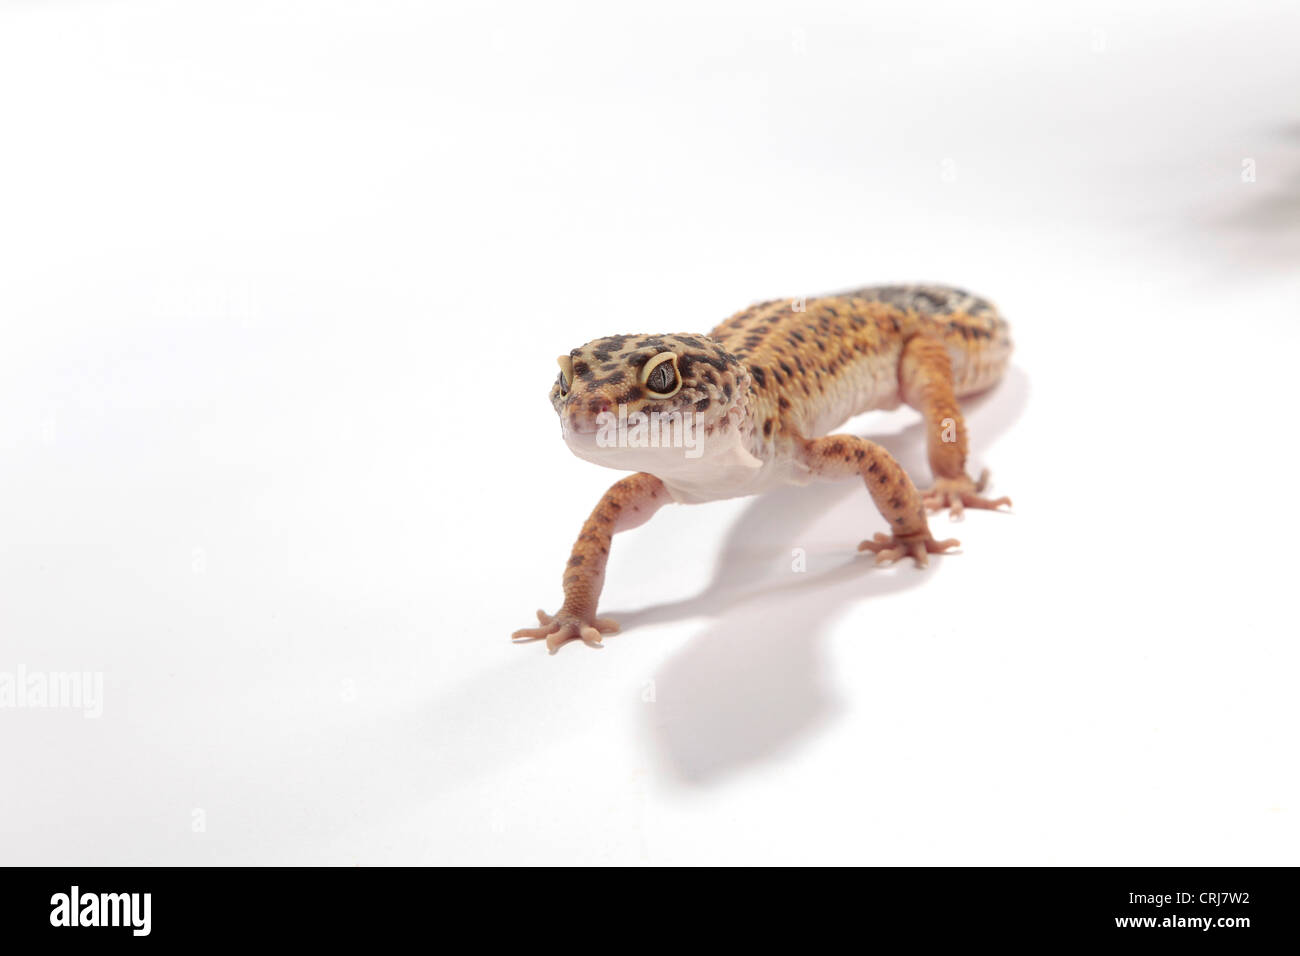 Gecko léopard sur un fond découpé Banque D'Images